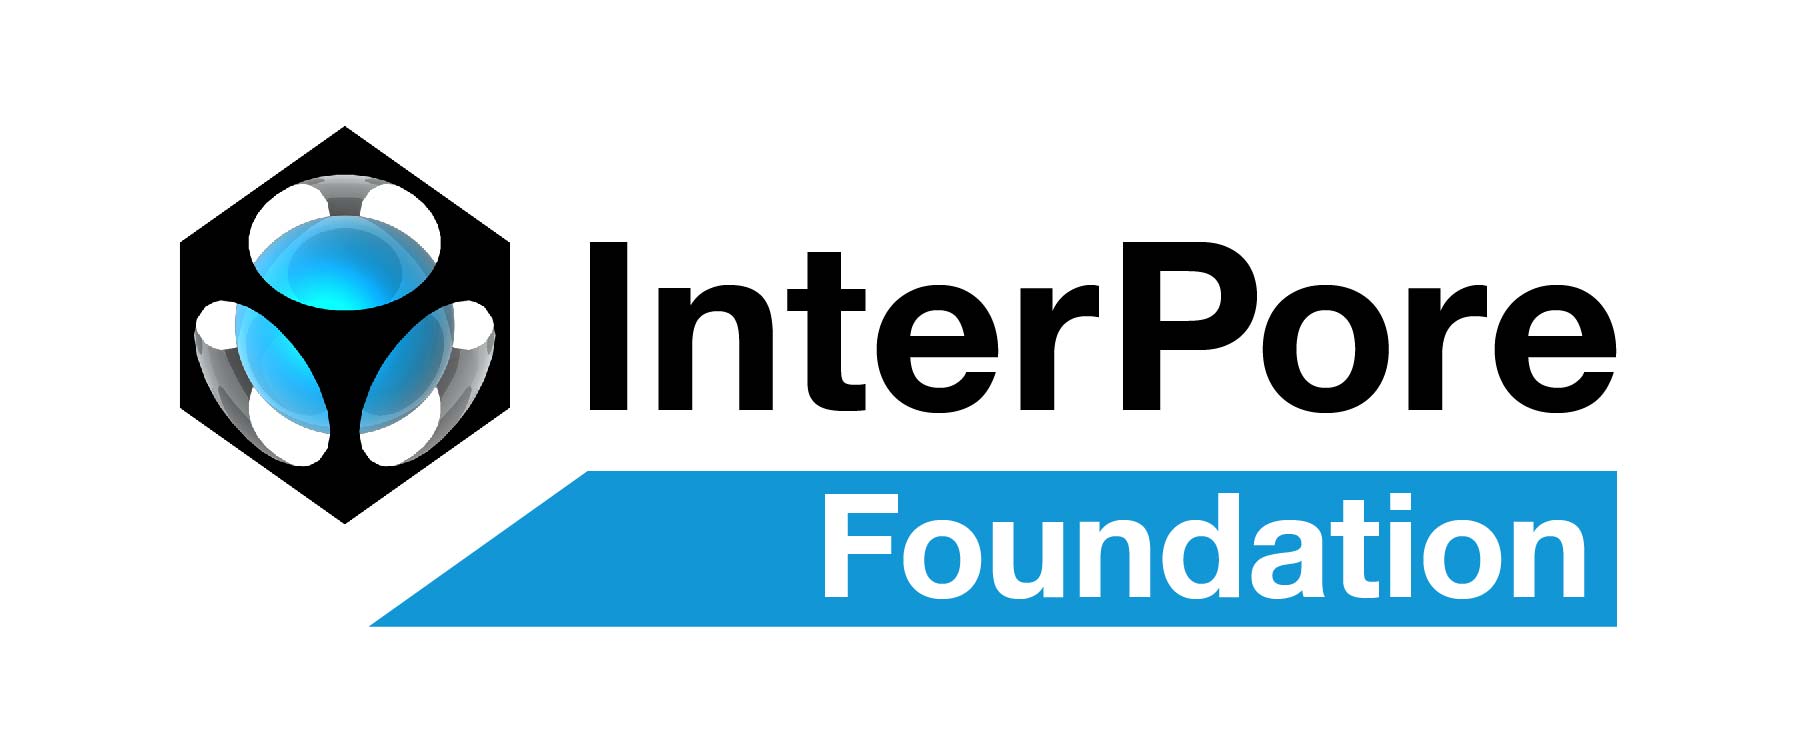 InterPore Foundation s